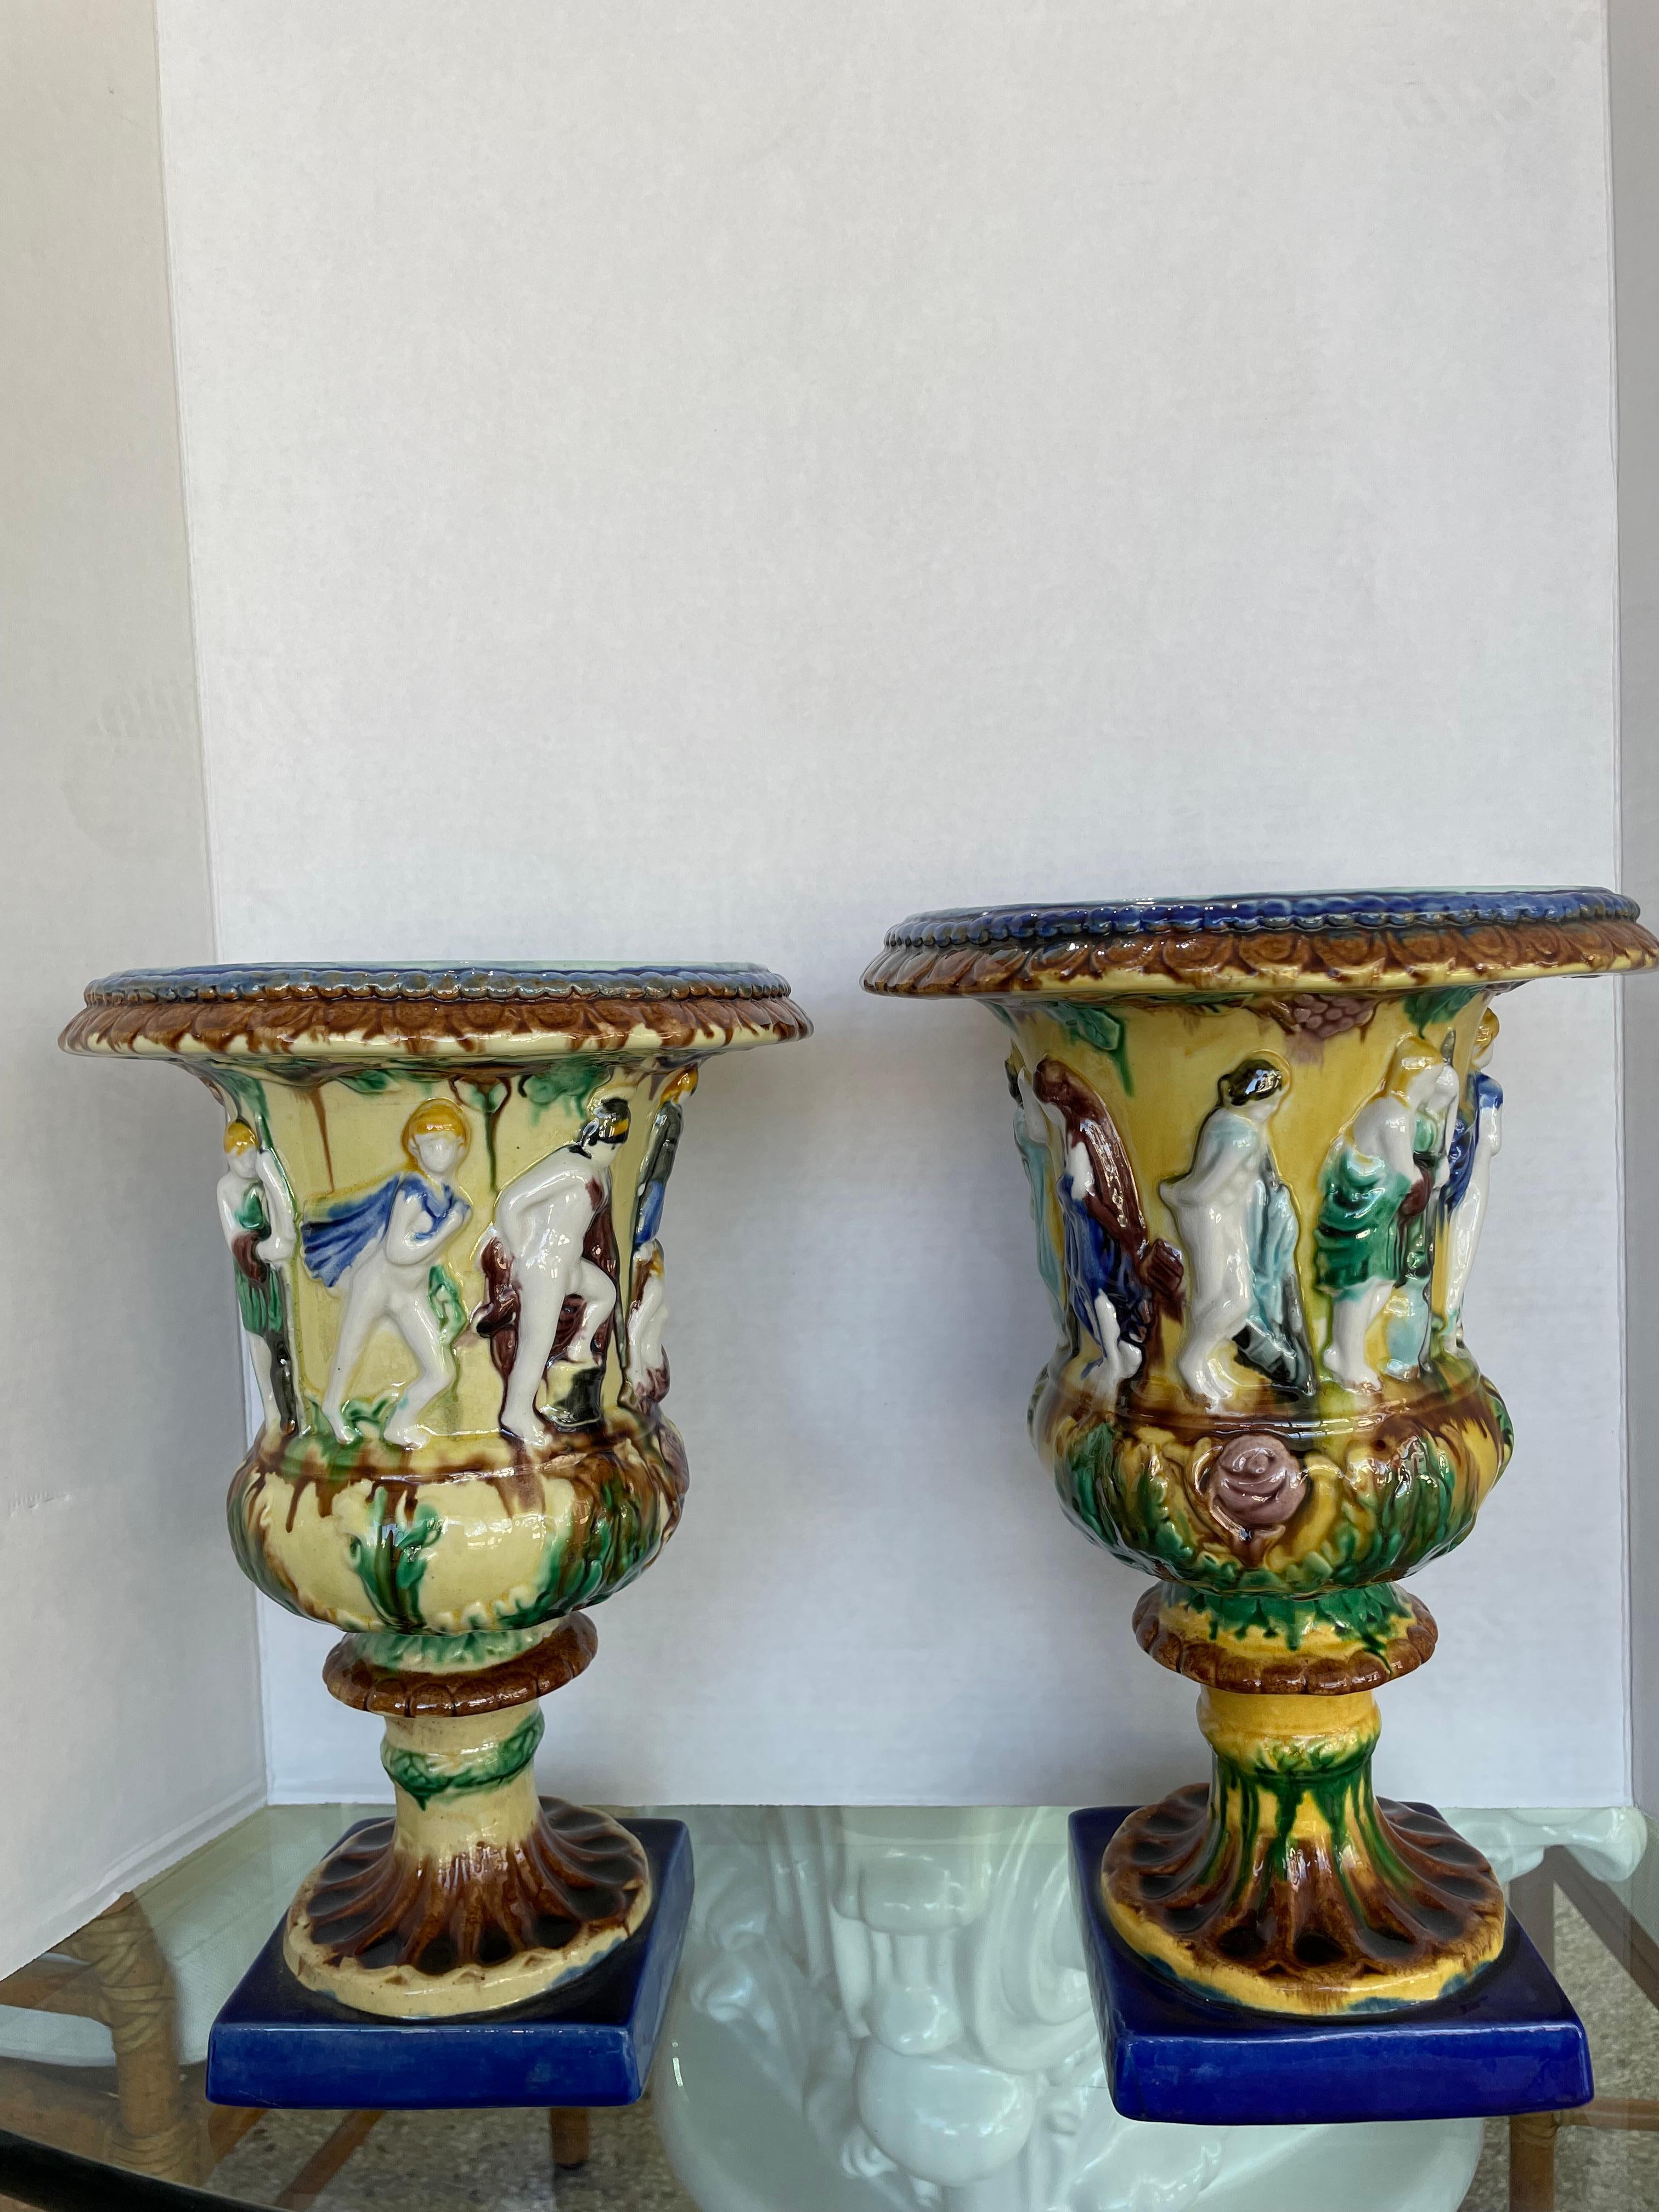 Cette élégante paire d'urnes anglaises en majolique vernissée ressemble beaucoup aux pièces convoitées par le décorateur américain Mario Buatta. 

Remarque : les dimensions d'une urne sont de 12,75